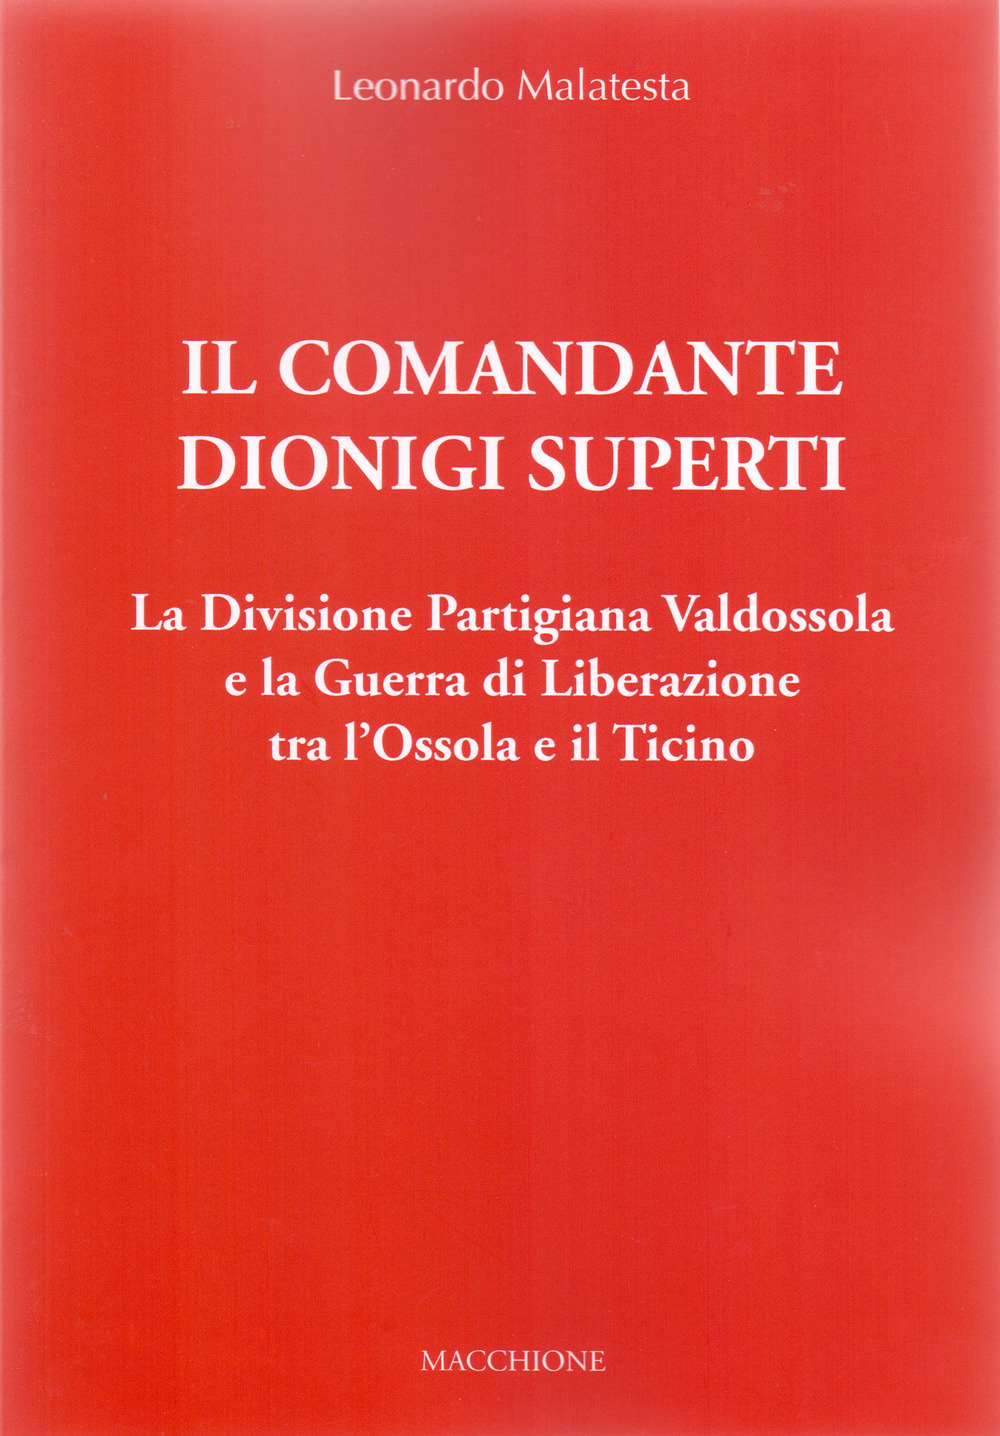 Il Comandante Dionigi Superti. La Divisione Partigiana Valdossola e la Guerra di Liberazione tra l'Ossola e il Ticino